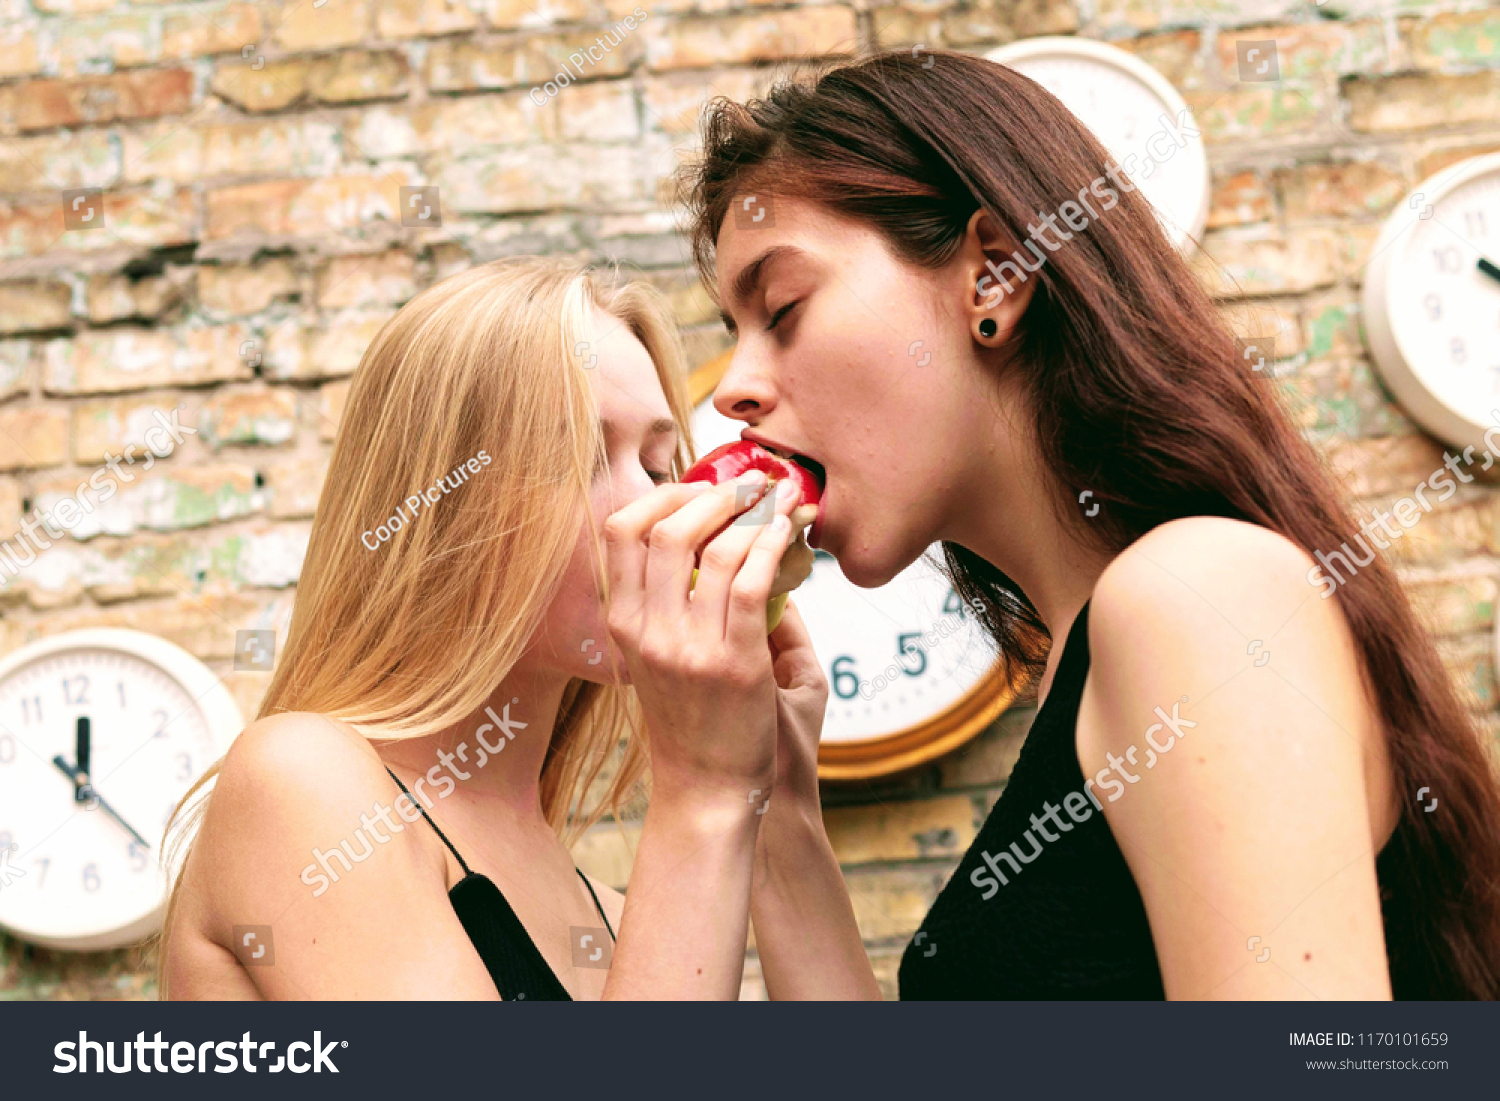 Lesbian Seduction Pics